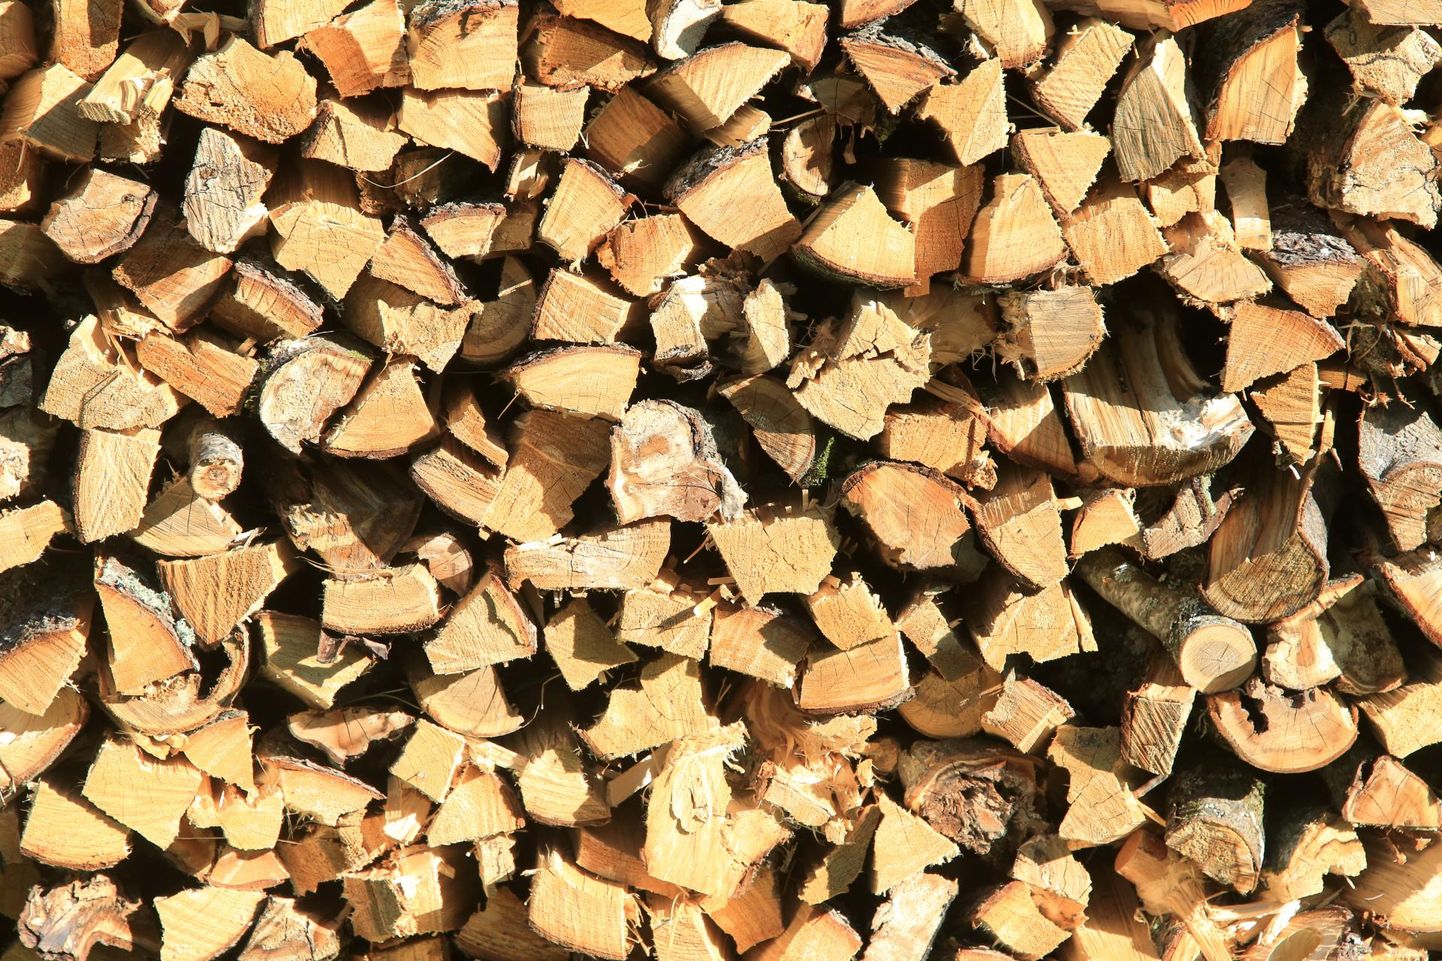 Otsesõnu ei ole keelatud keldriruumidesse puid ladustada, siiski ei ole mõistlik küttematerjali keldris hoida.